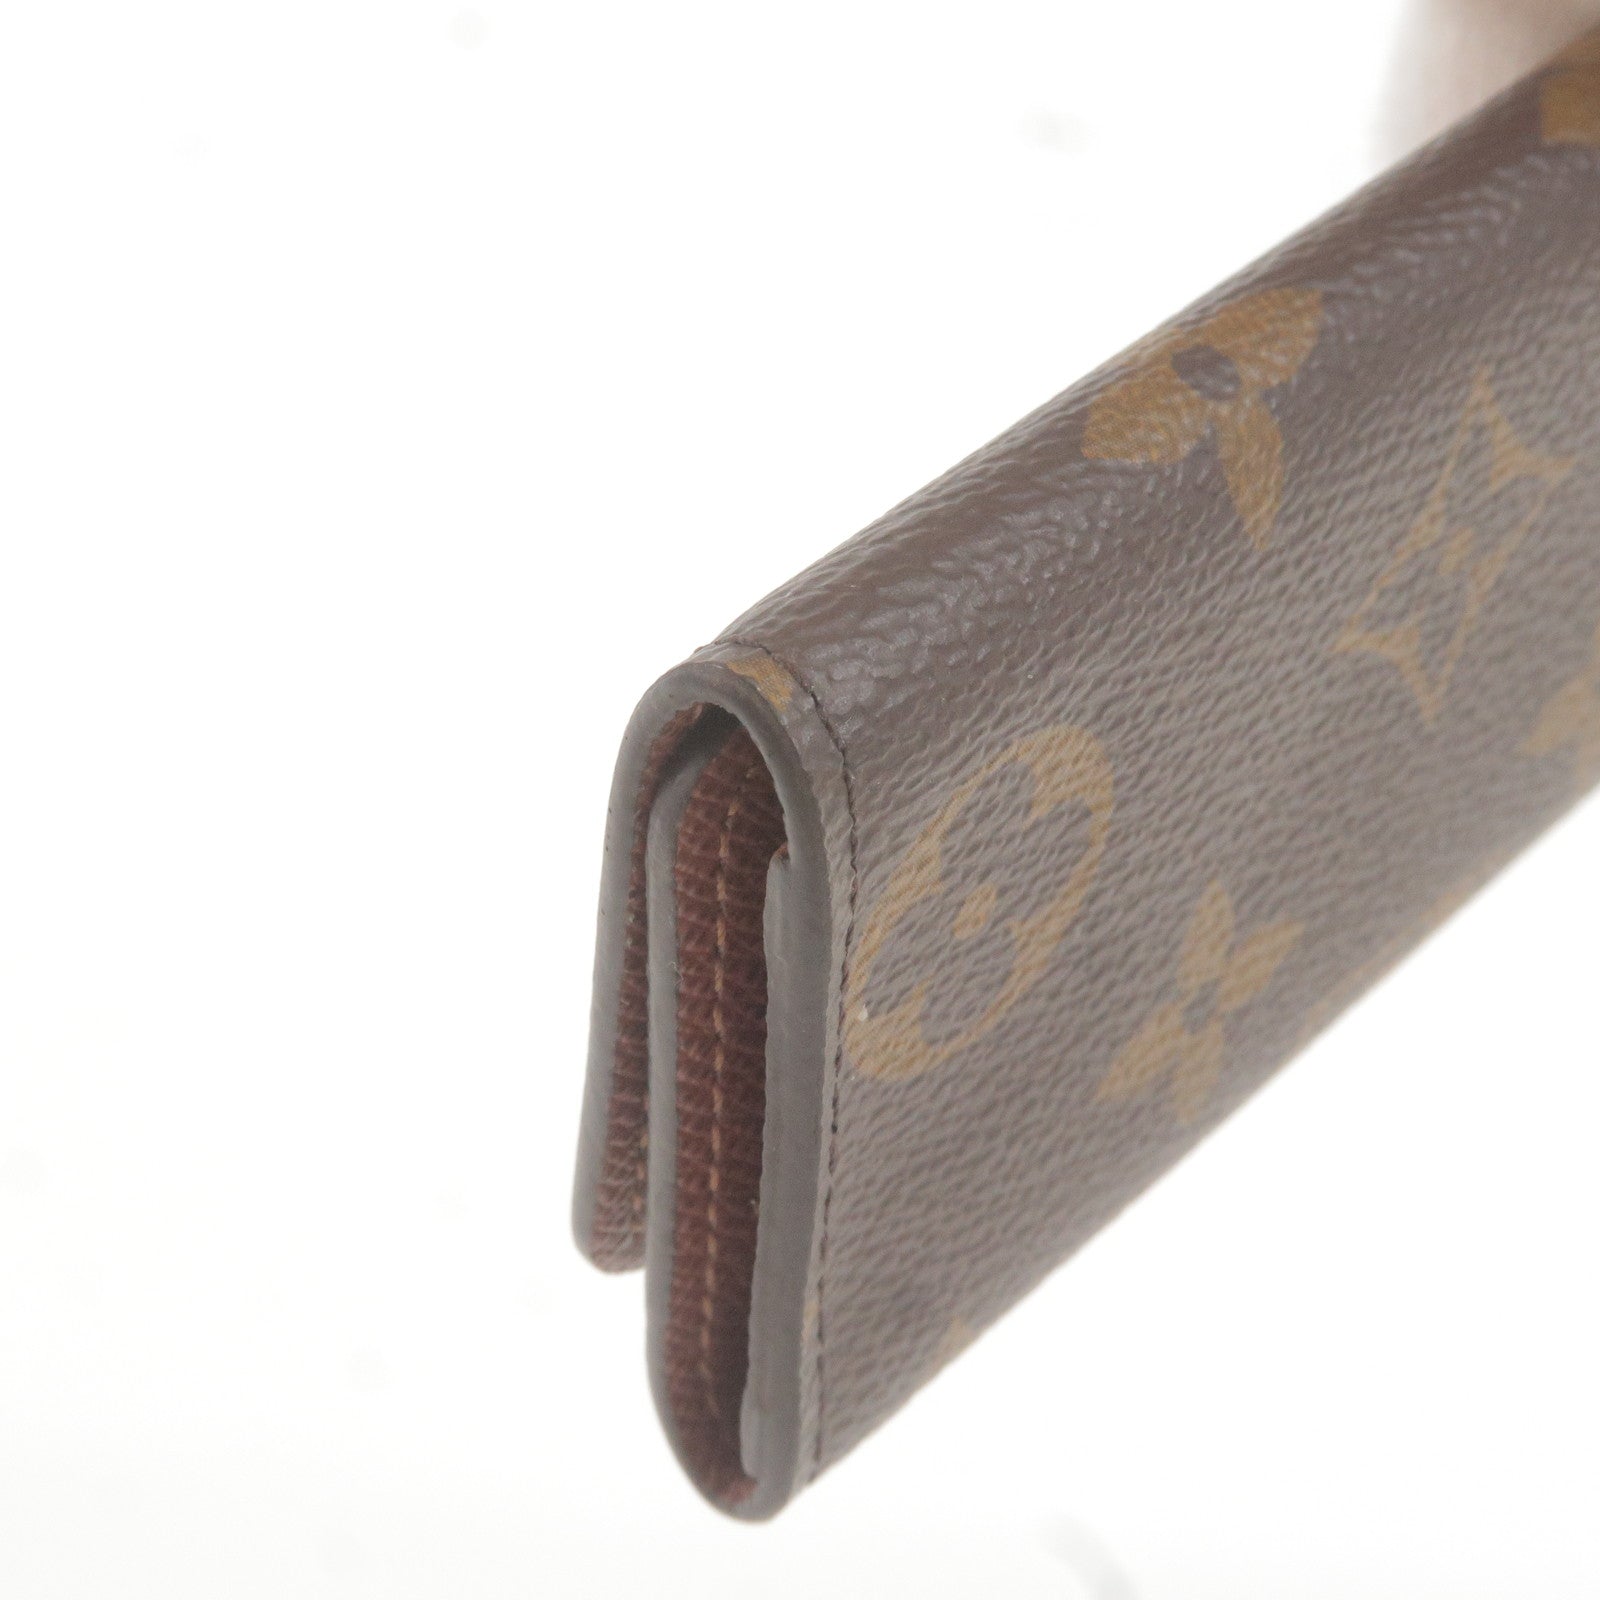 Louis Vuitton Brown Monogram 4 Key Holder